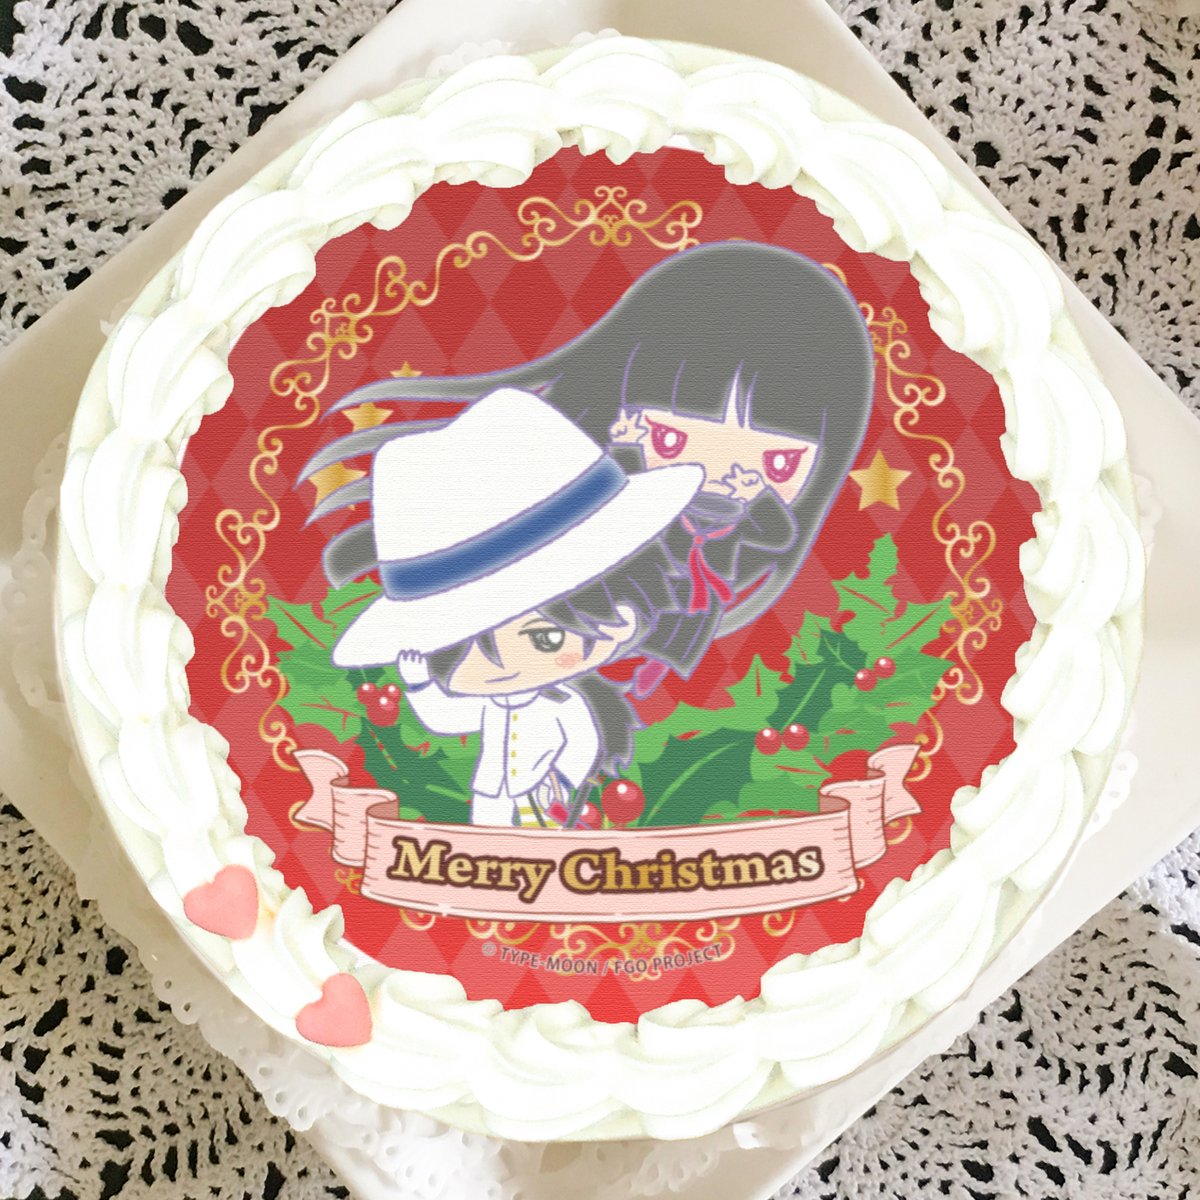 プリロール公式 キャラケーキ マカロン Fate Grand Order サンリオ クリスマスケーキご予約受付中 豊富なラインナップは全68種 購入特典缶バッジ付きで全国へお届けします 本日11 23 月 まで 5 Off価格でご購入頂ける早期ご予約